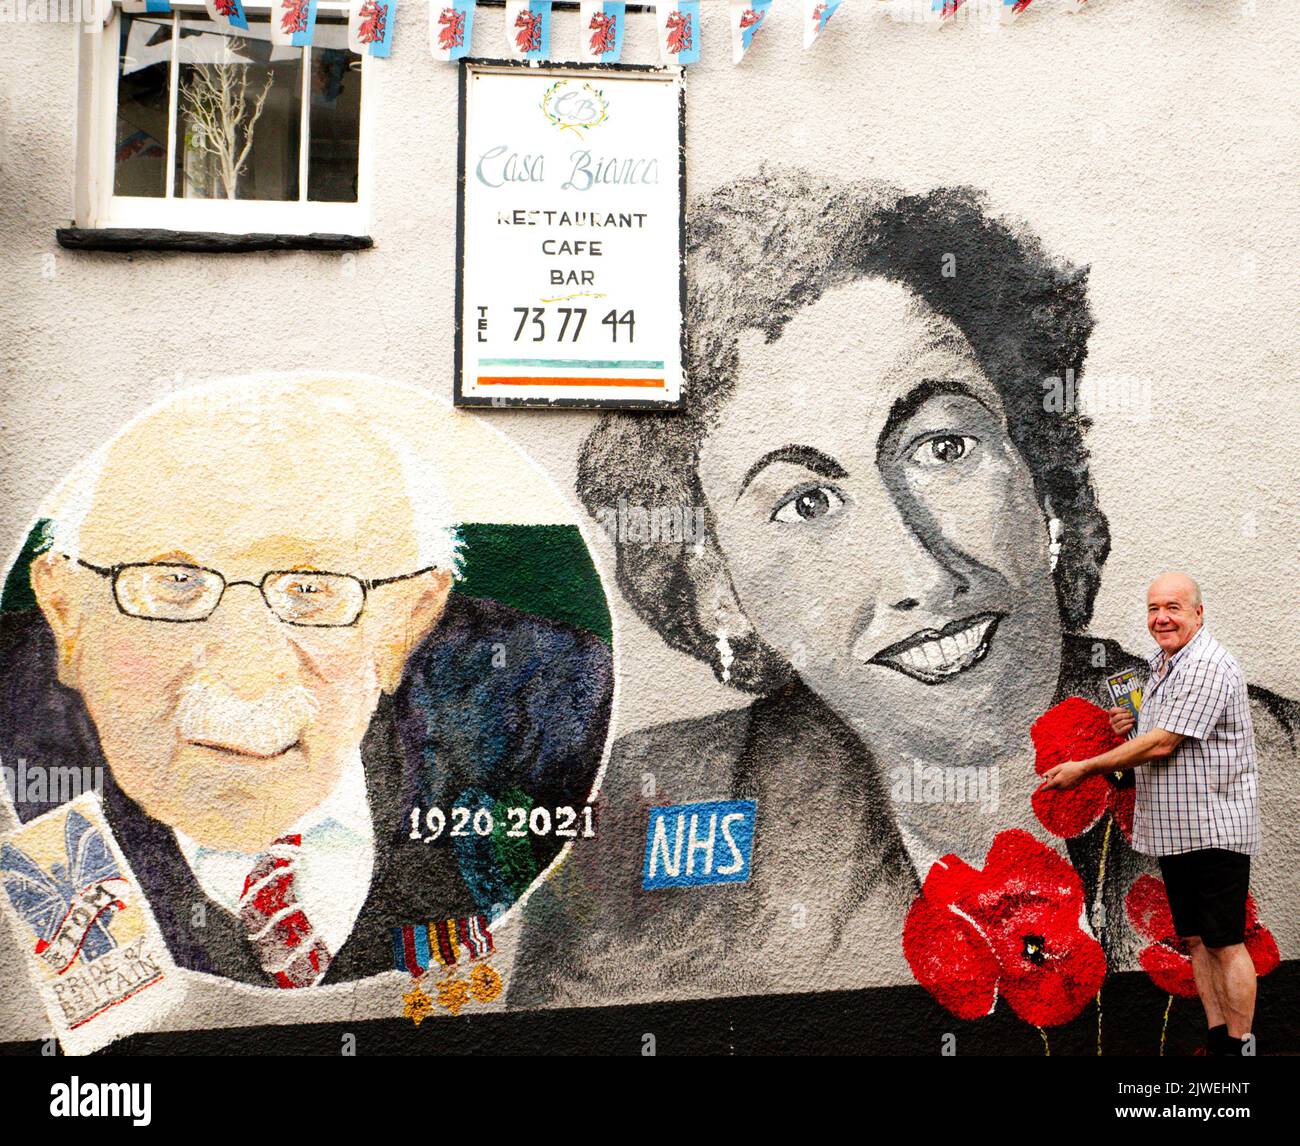 Paul Cable, marchand de journaux et artiste local d'Abergavenny, se dresse à côté d'une fresque qu'il a peinte dans la ville, avec le capitaine Sir Tom Moore et Dame Vera Lynn. Banque D'Images